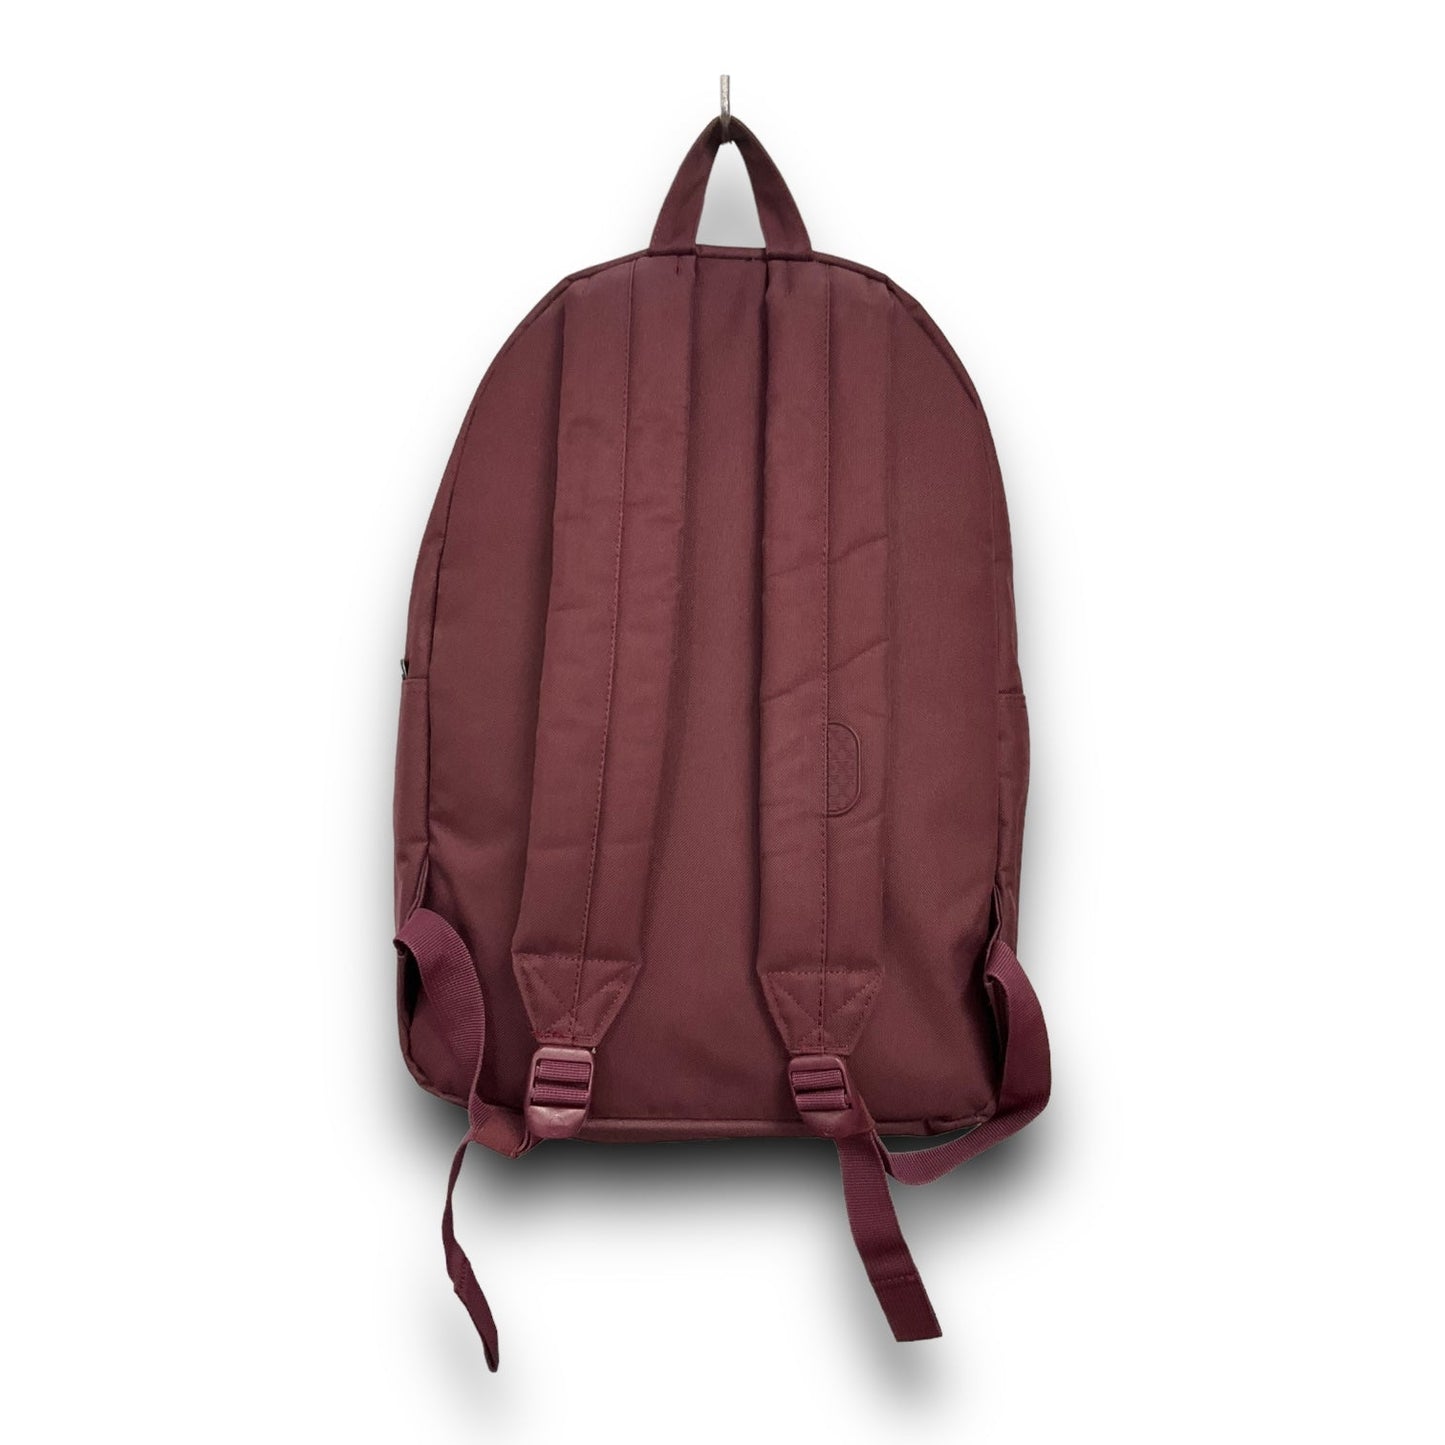 Backpack Herschel, Size Large